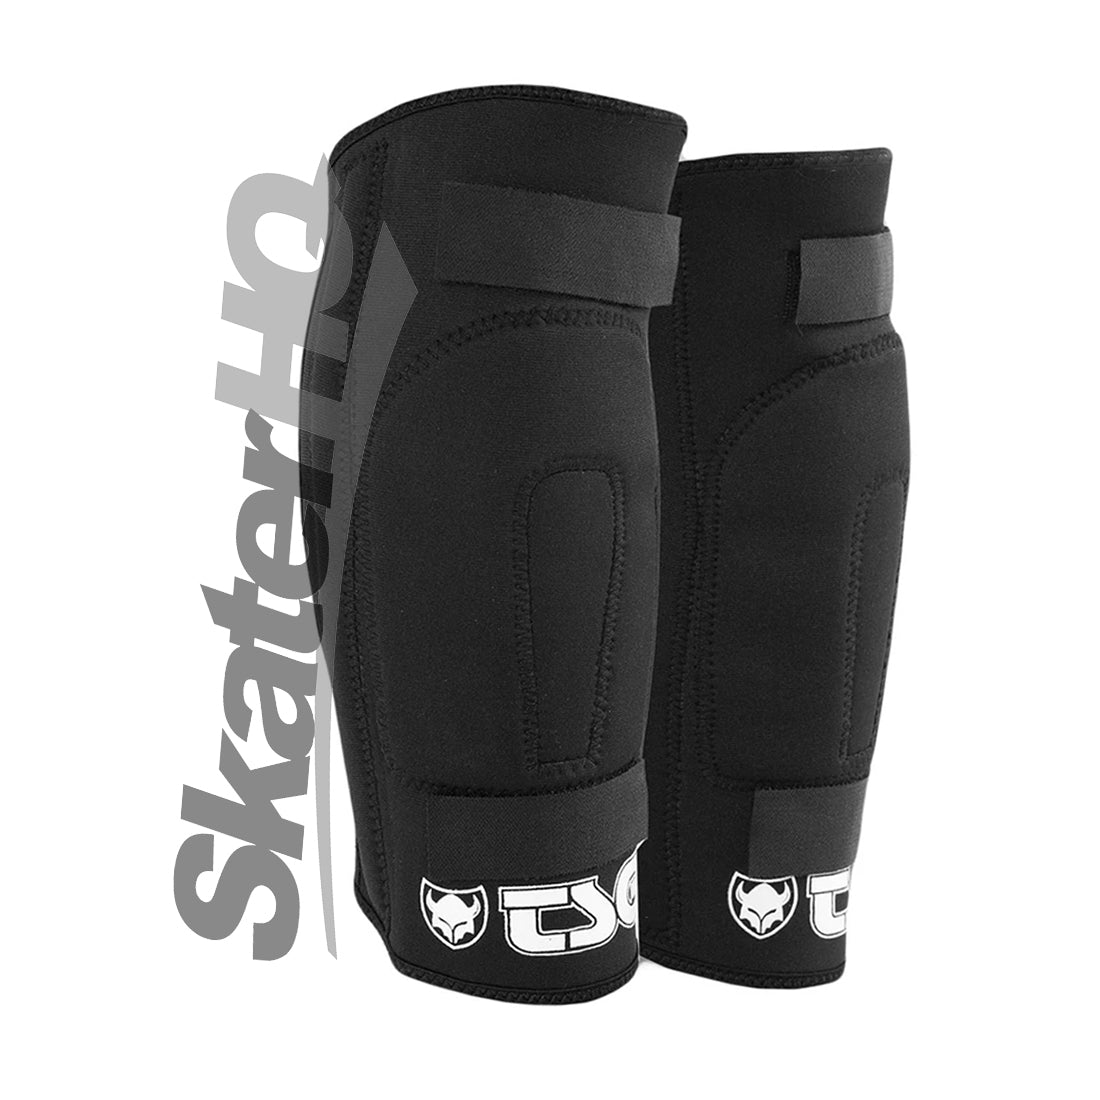 TSG Knee Gasket Brace - S/M Protective Gear